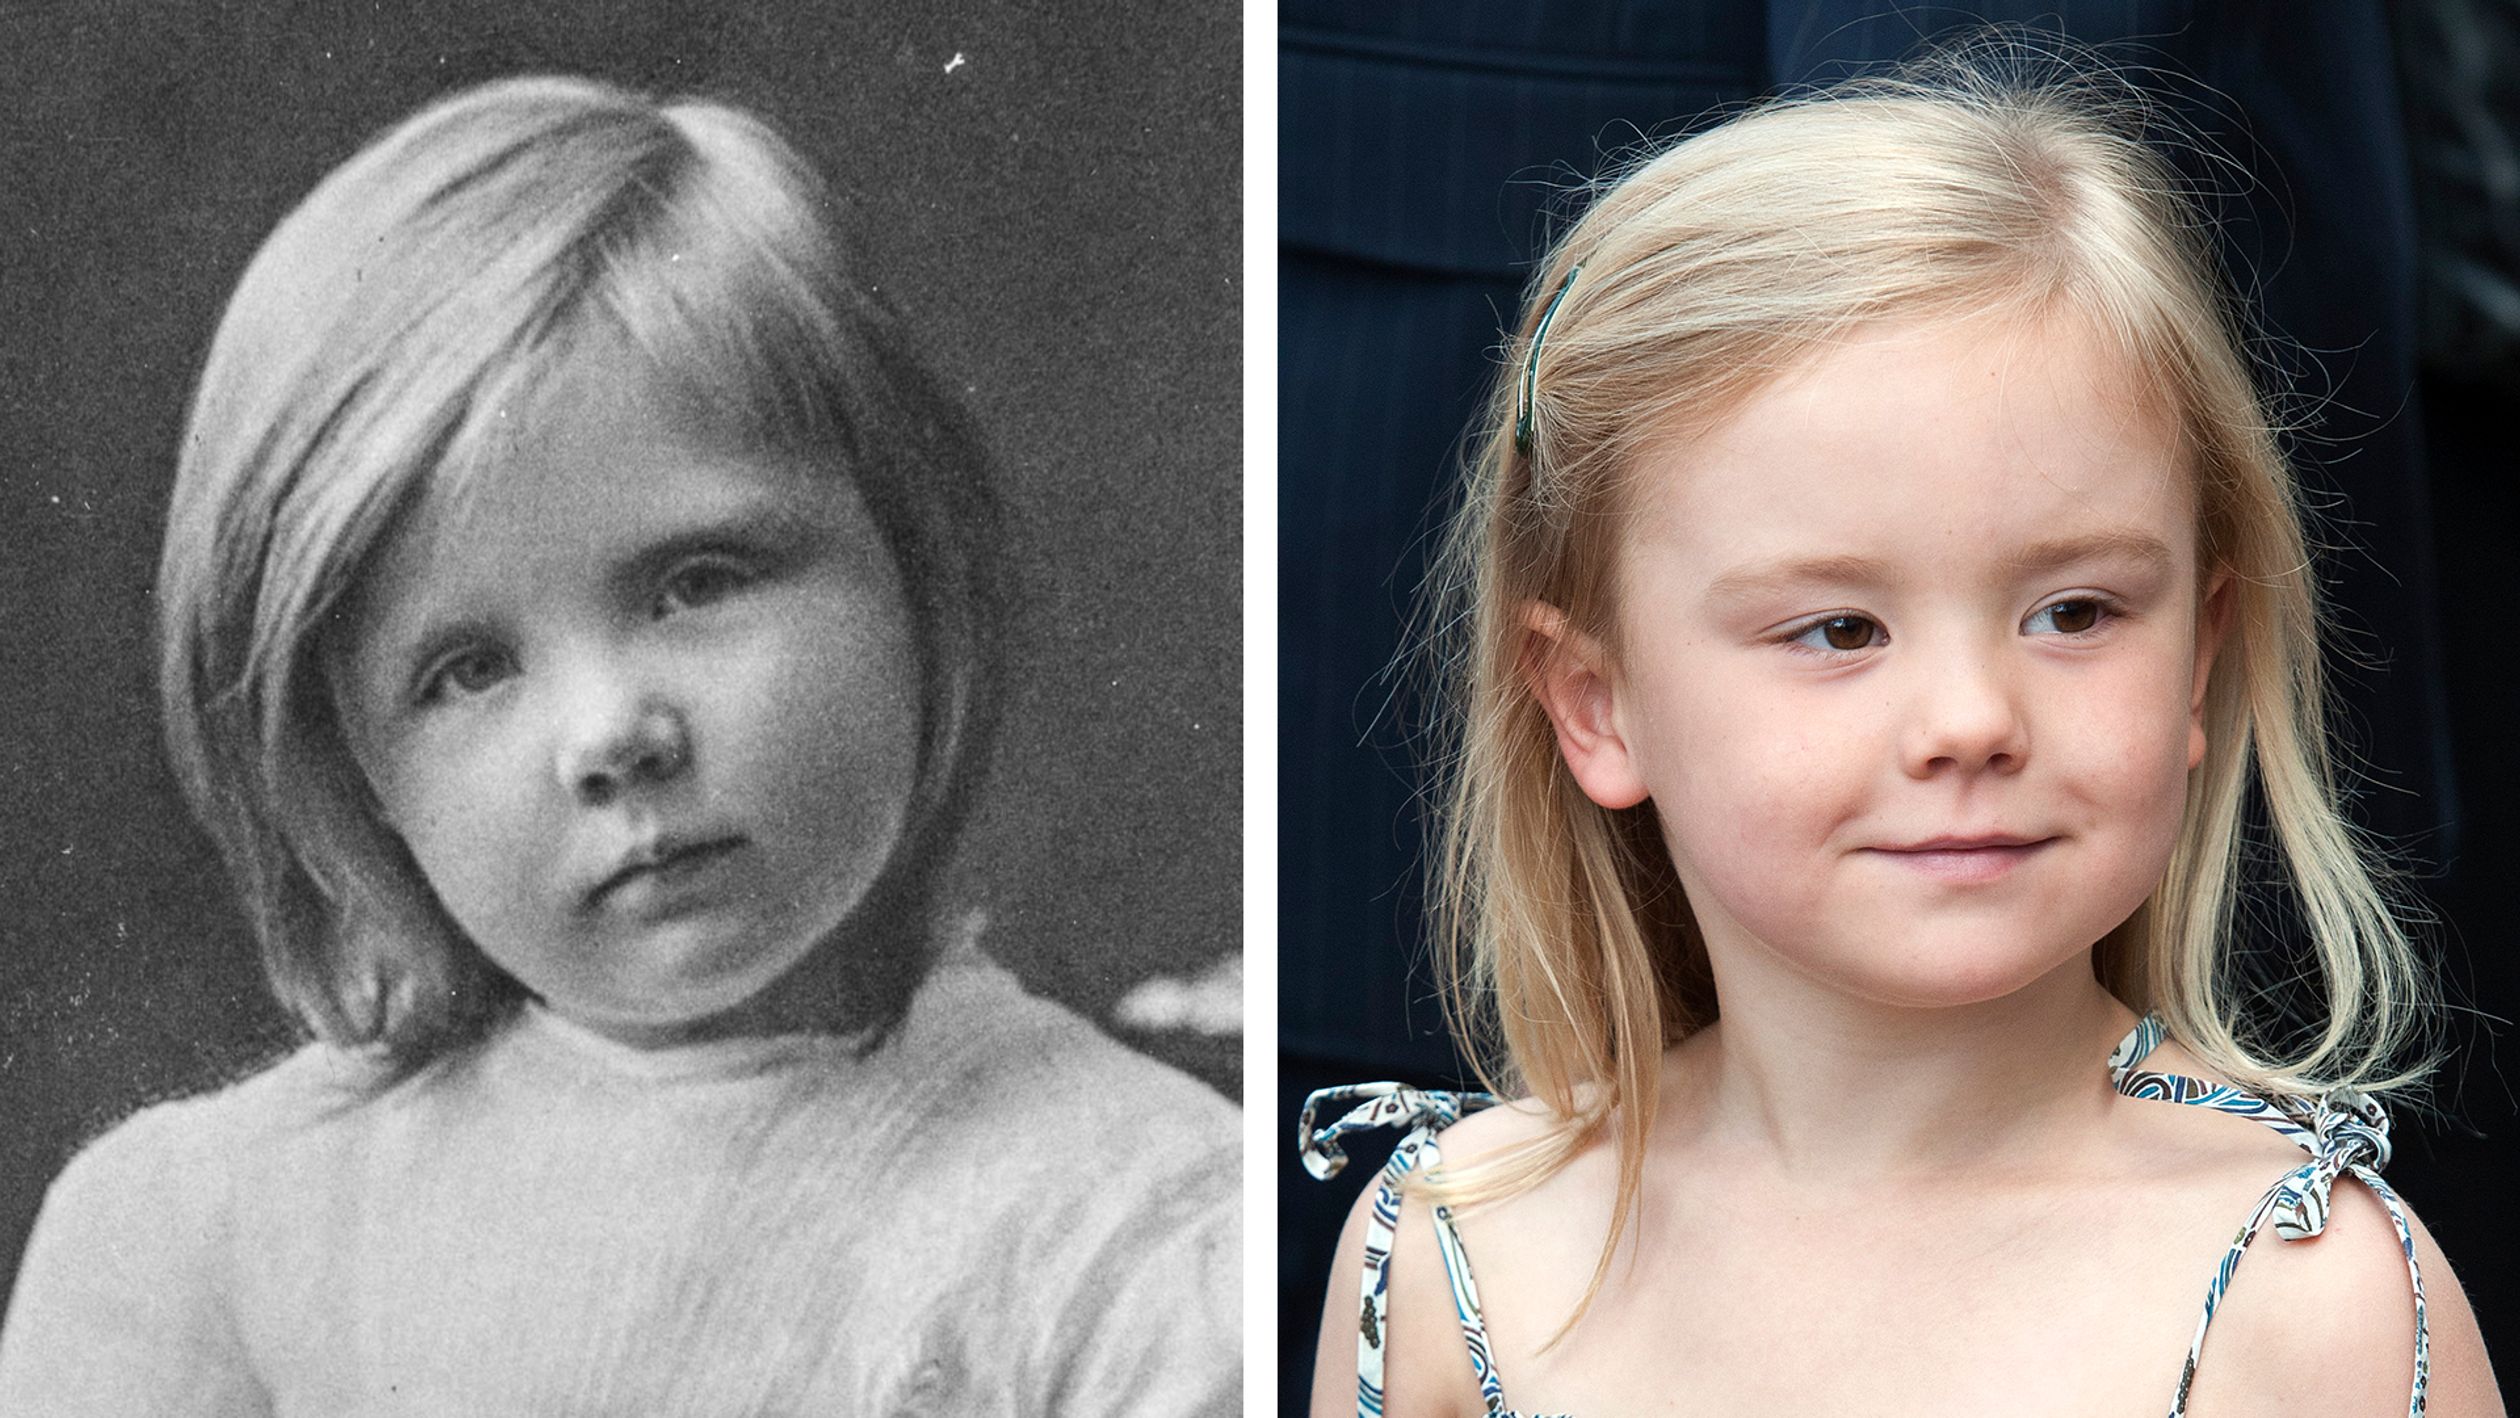 De prinsessen Juliana en Ariane zijn op deze foto's beiden 5 jaar oud.